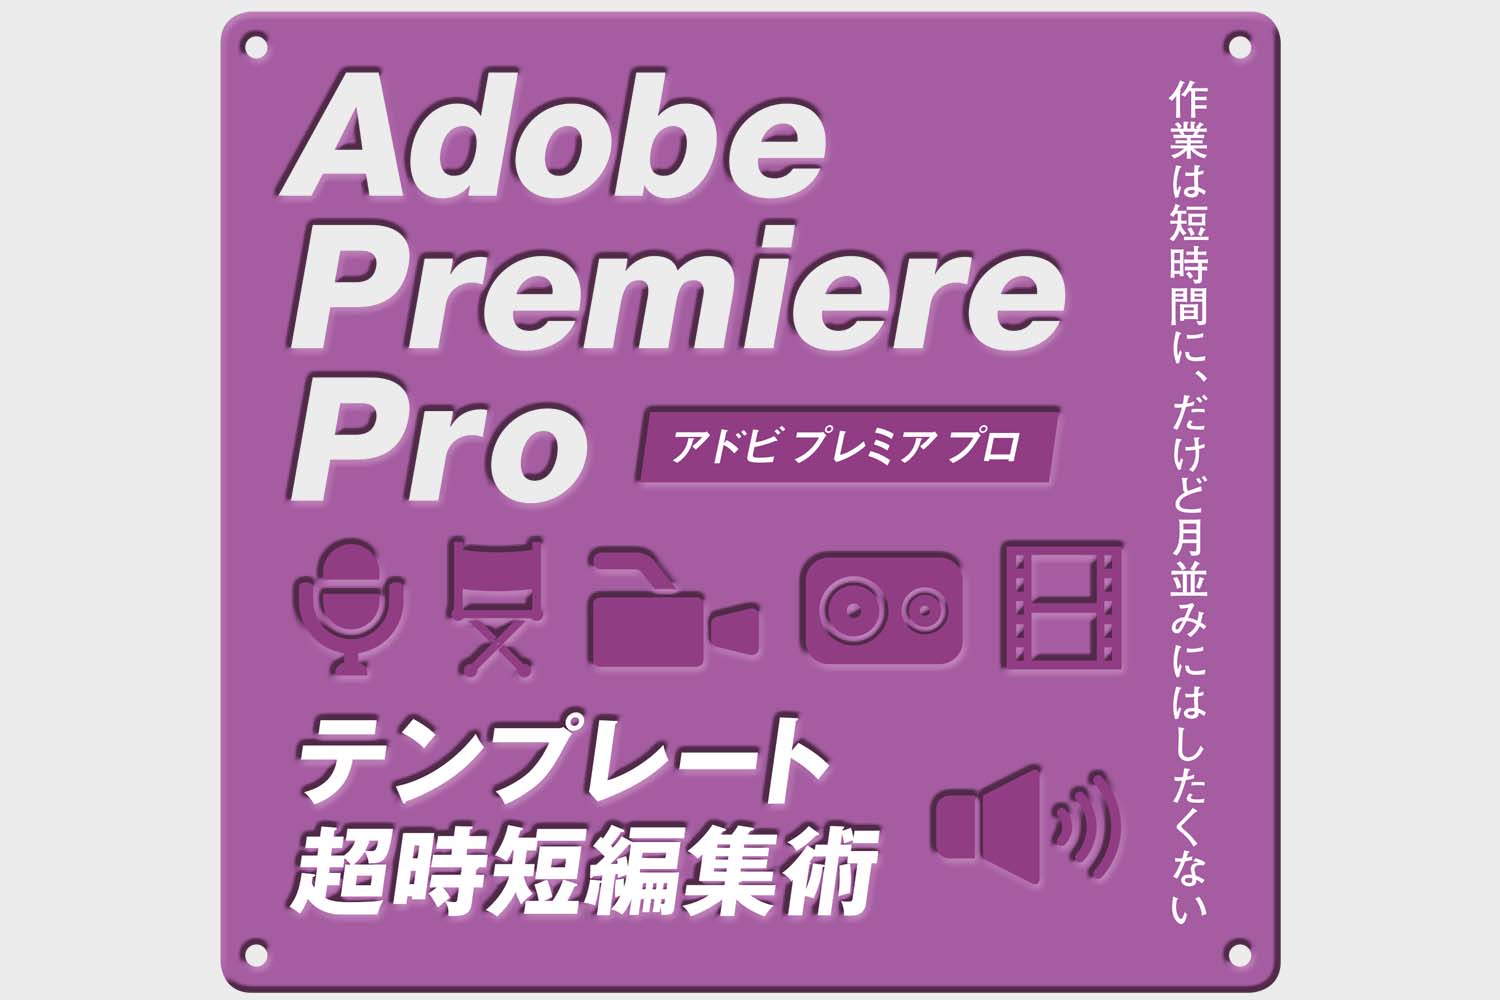 Adobe Premiere Pro テンプレートを使った時短編集について7月号で特集します ビデオsalon